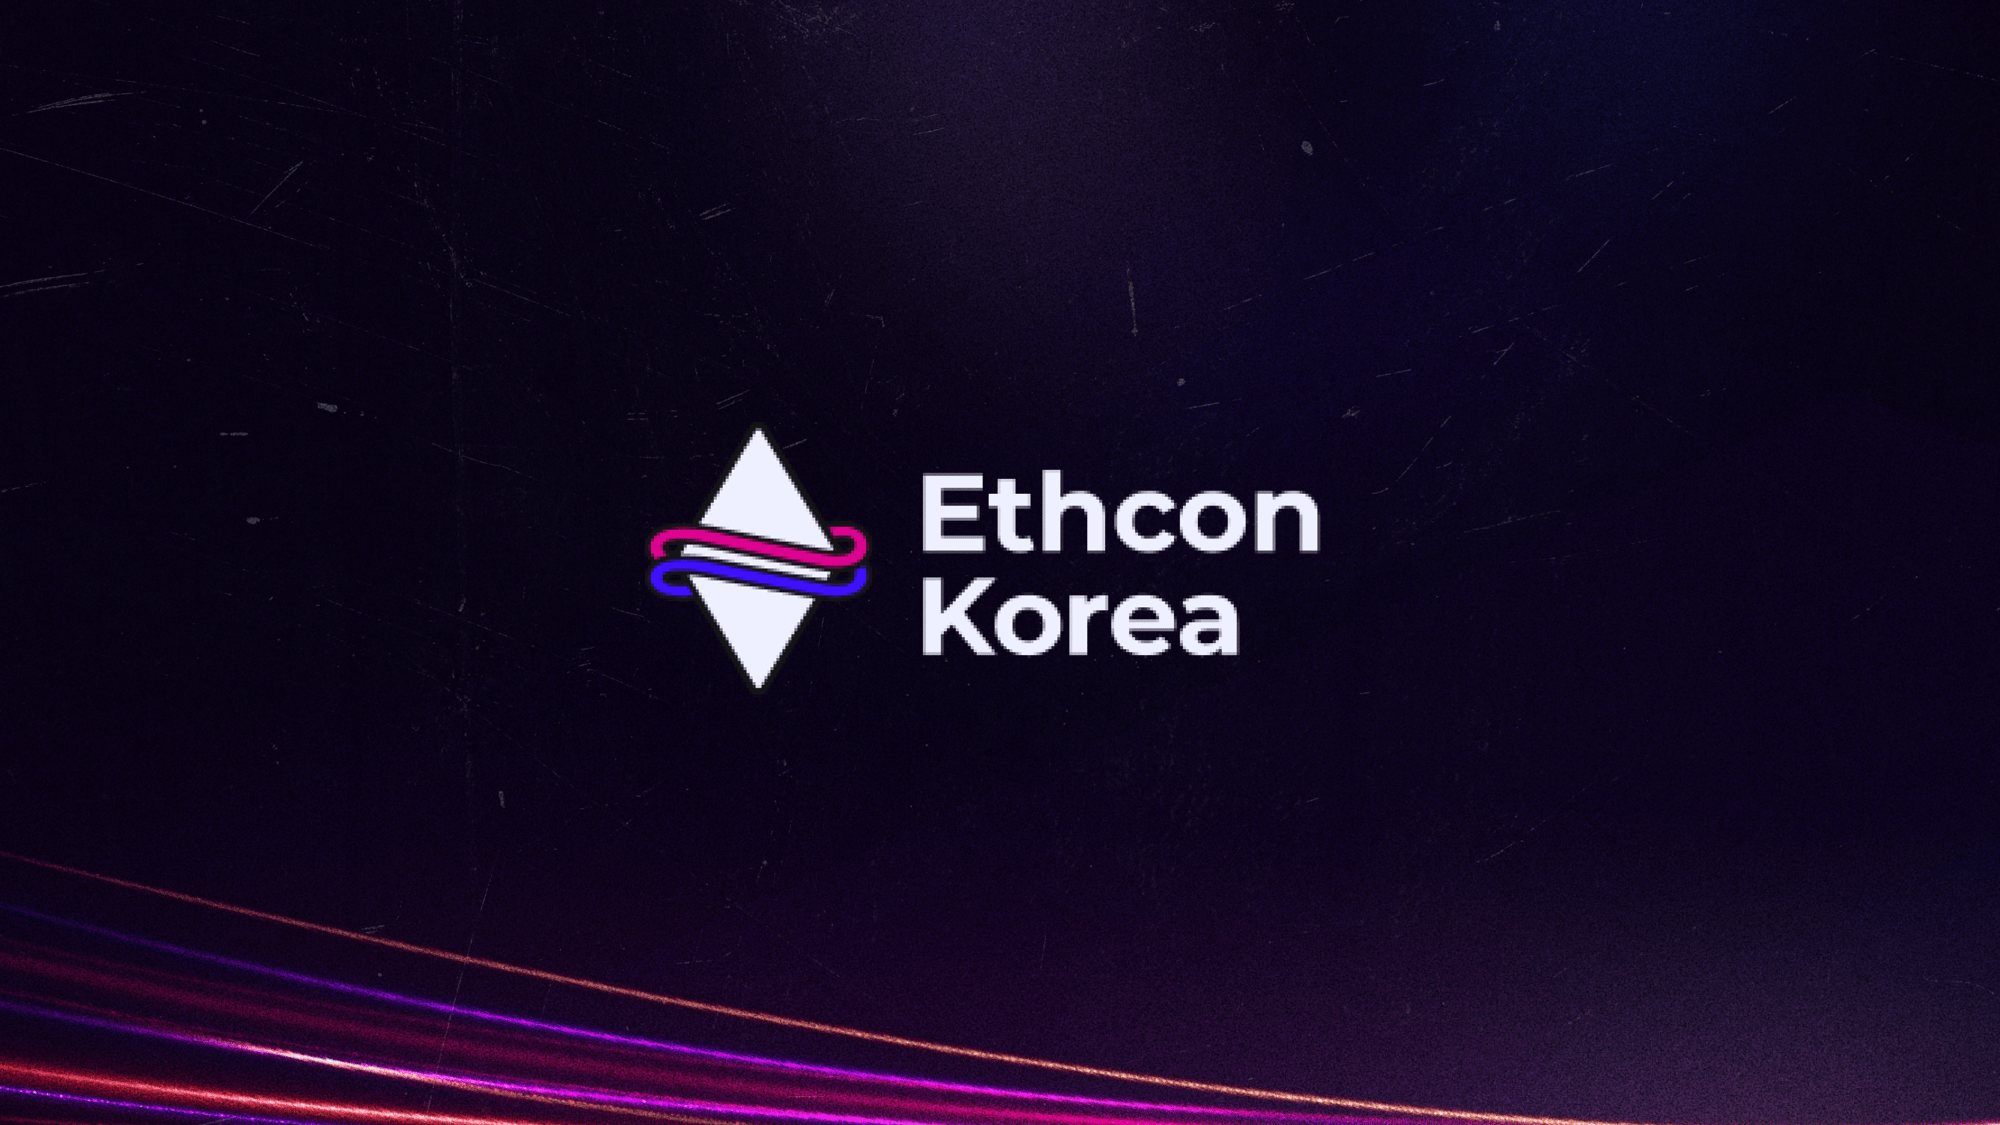 Ethcon Korea